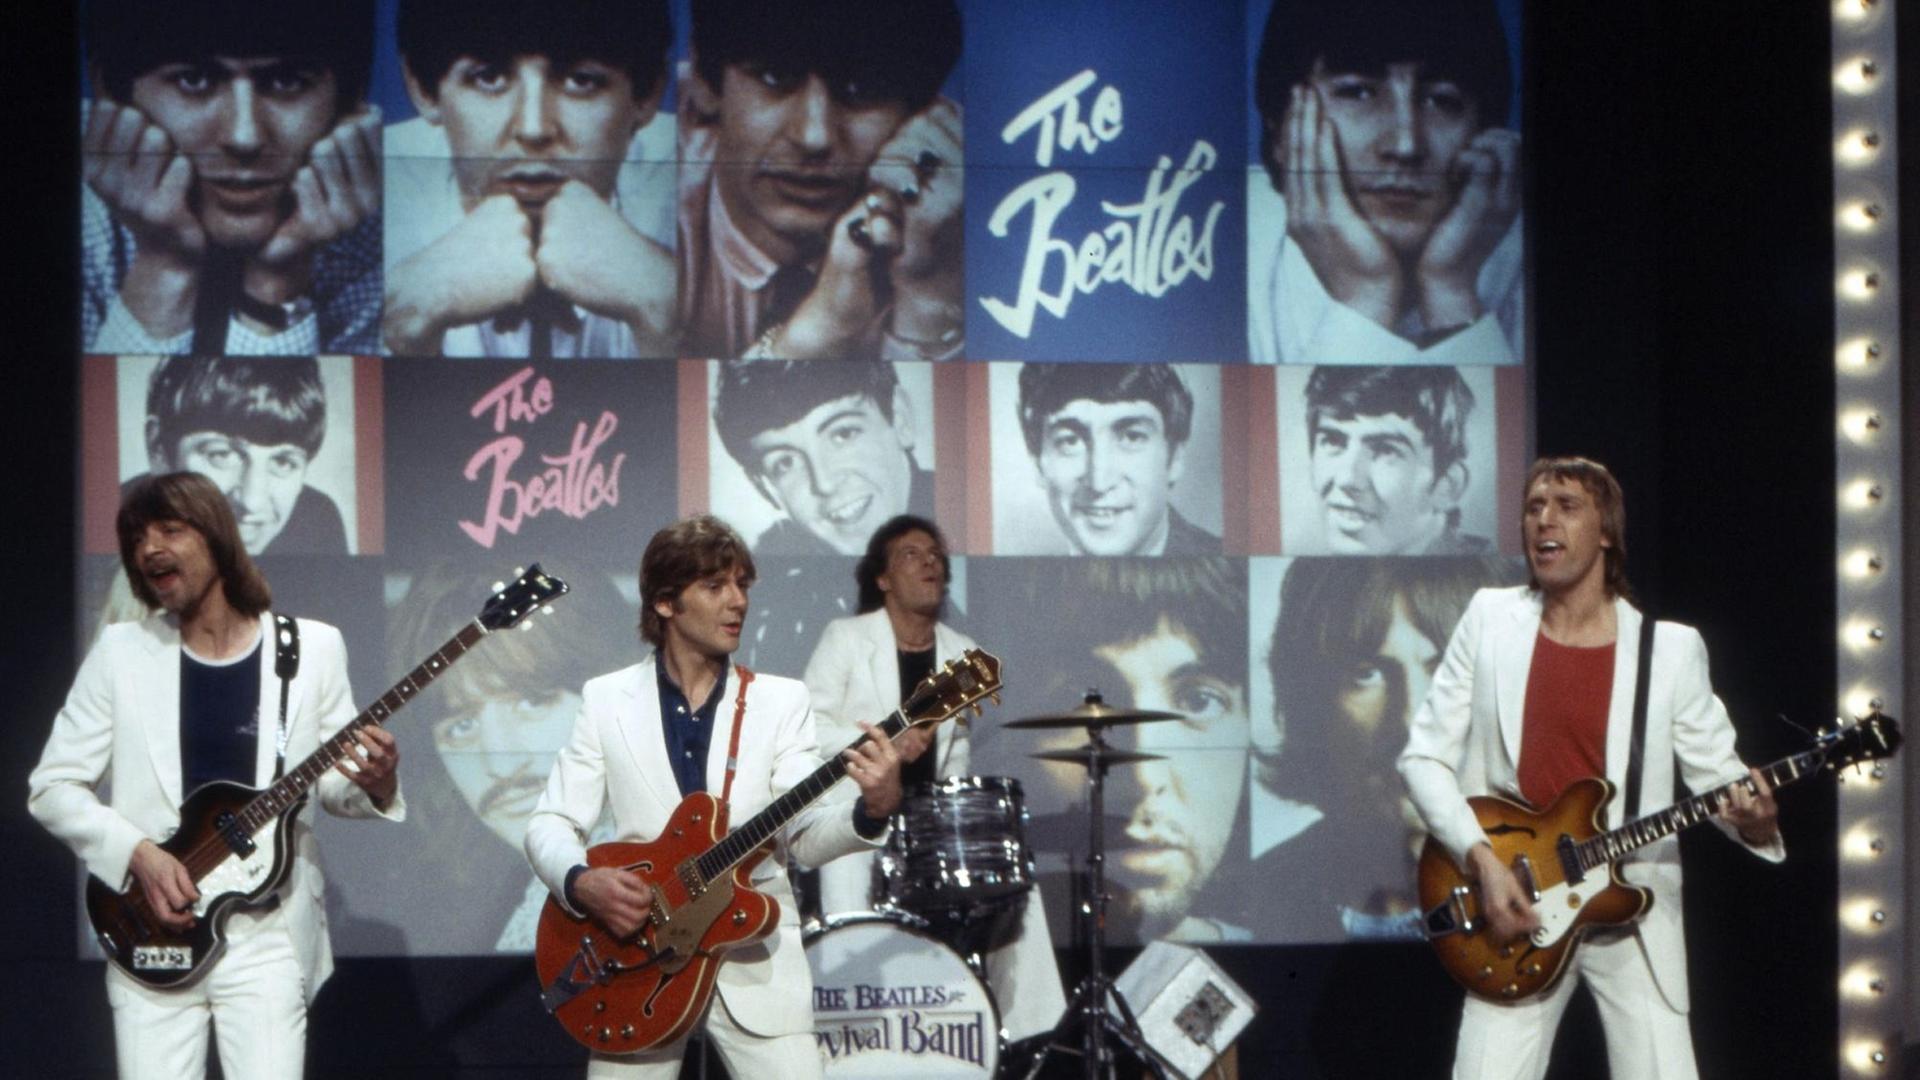 The Beatles Revival Band während eines Auftritts in den 1980er Jahren.